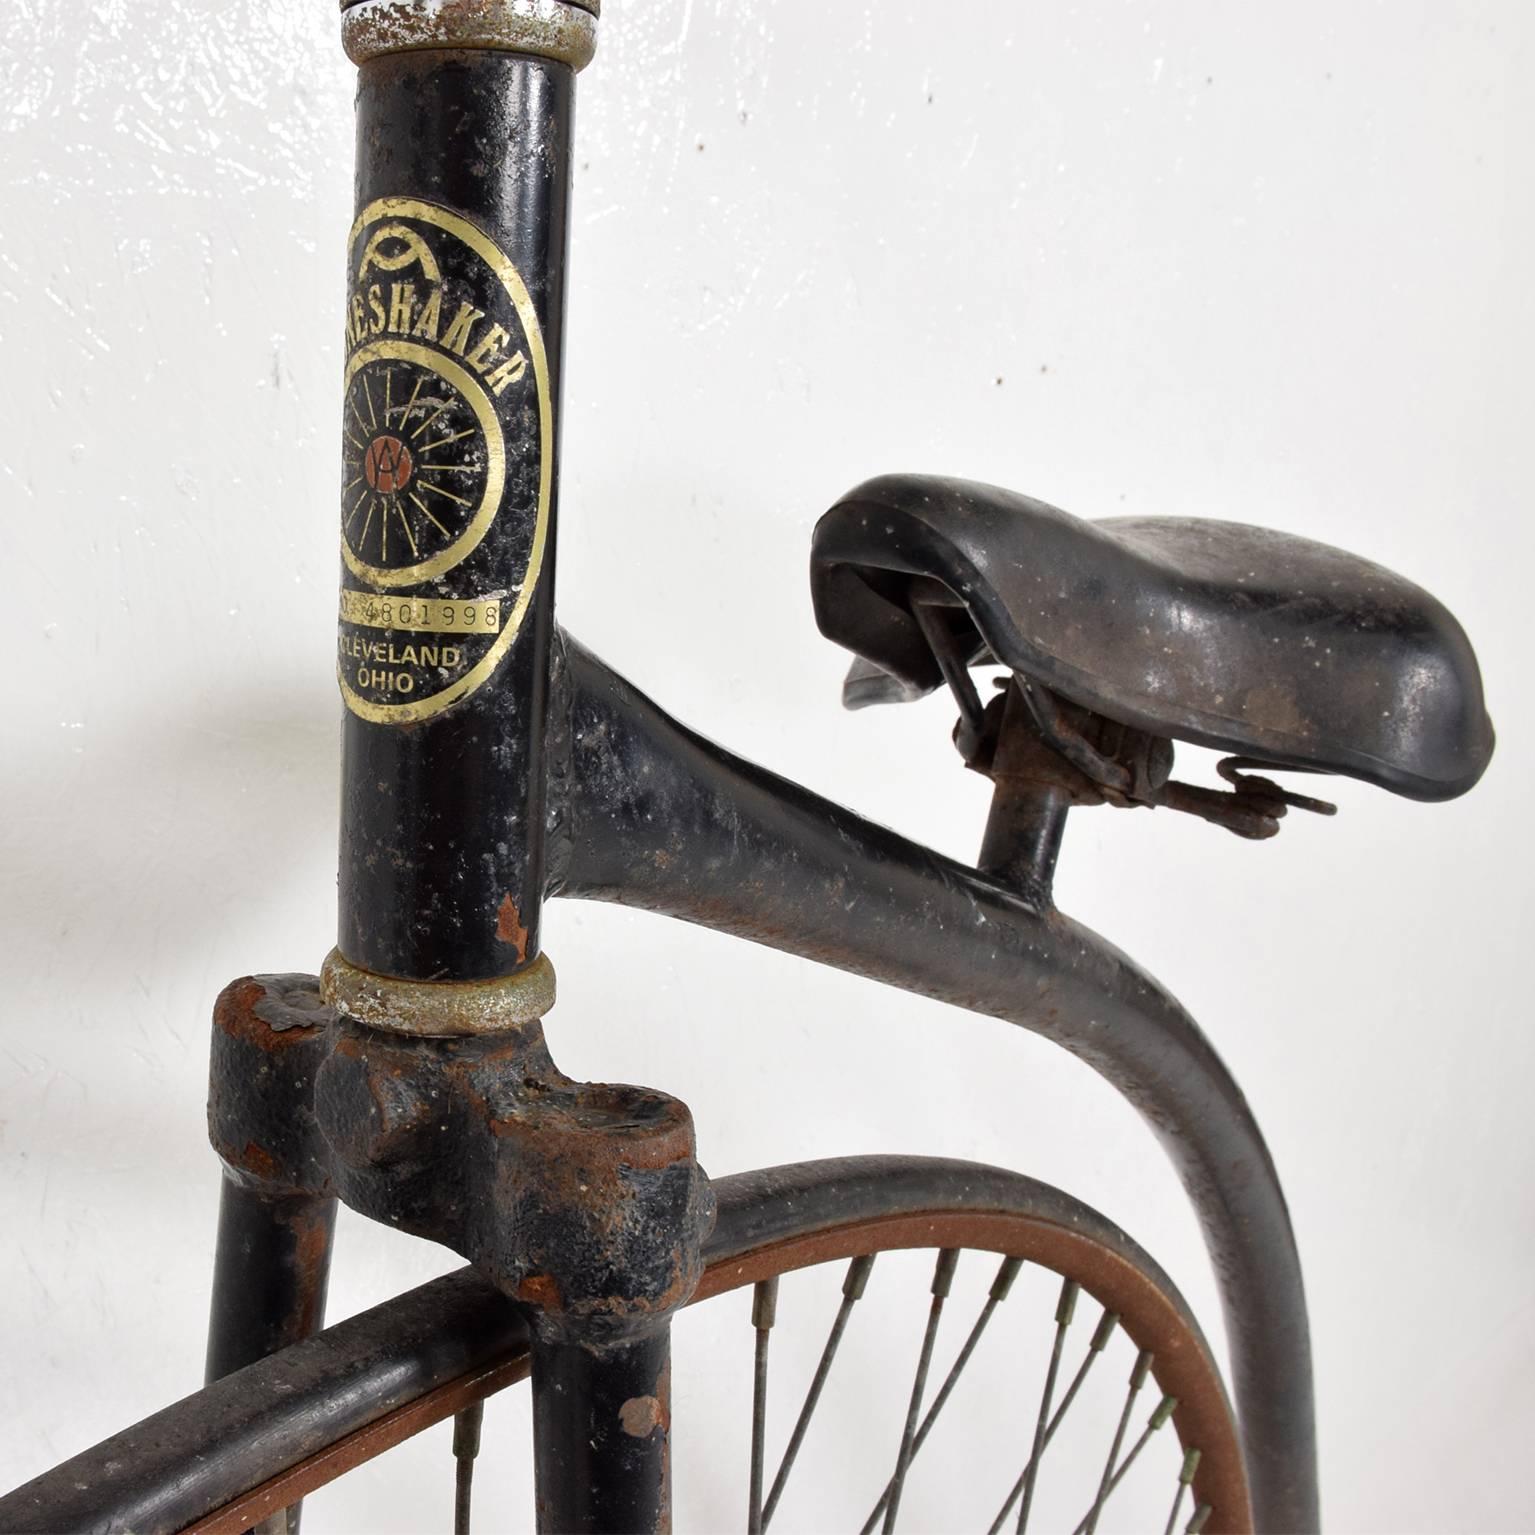 Painted Velocipide Boneshaker High Wheel Bike, 1870s Victorian Era